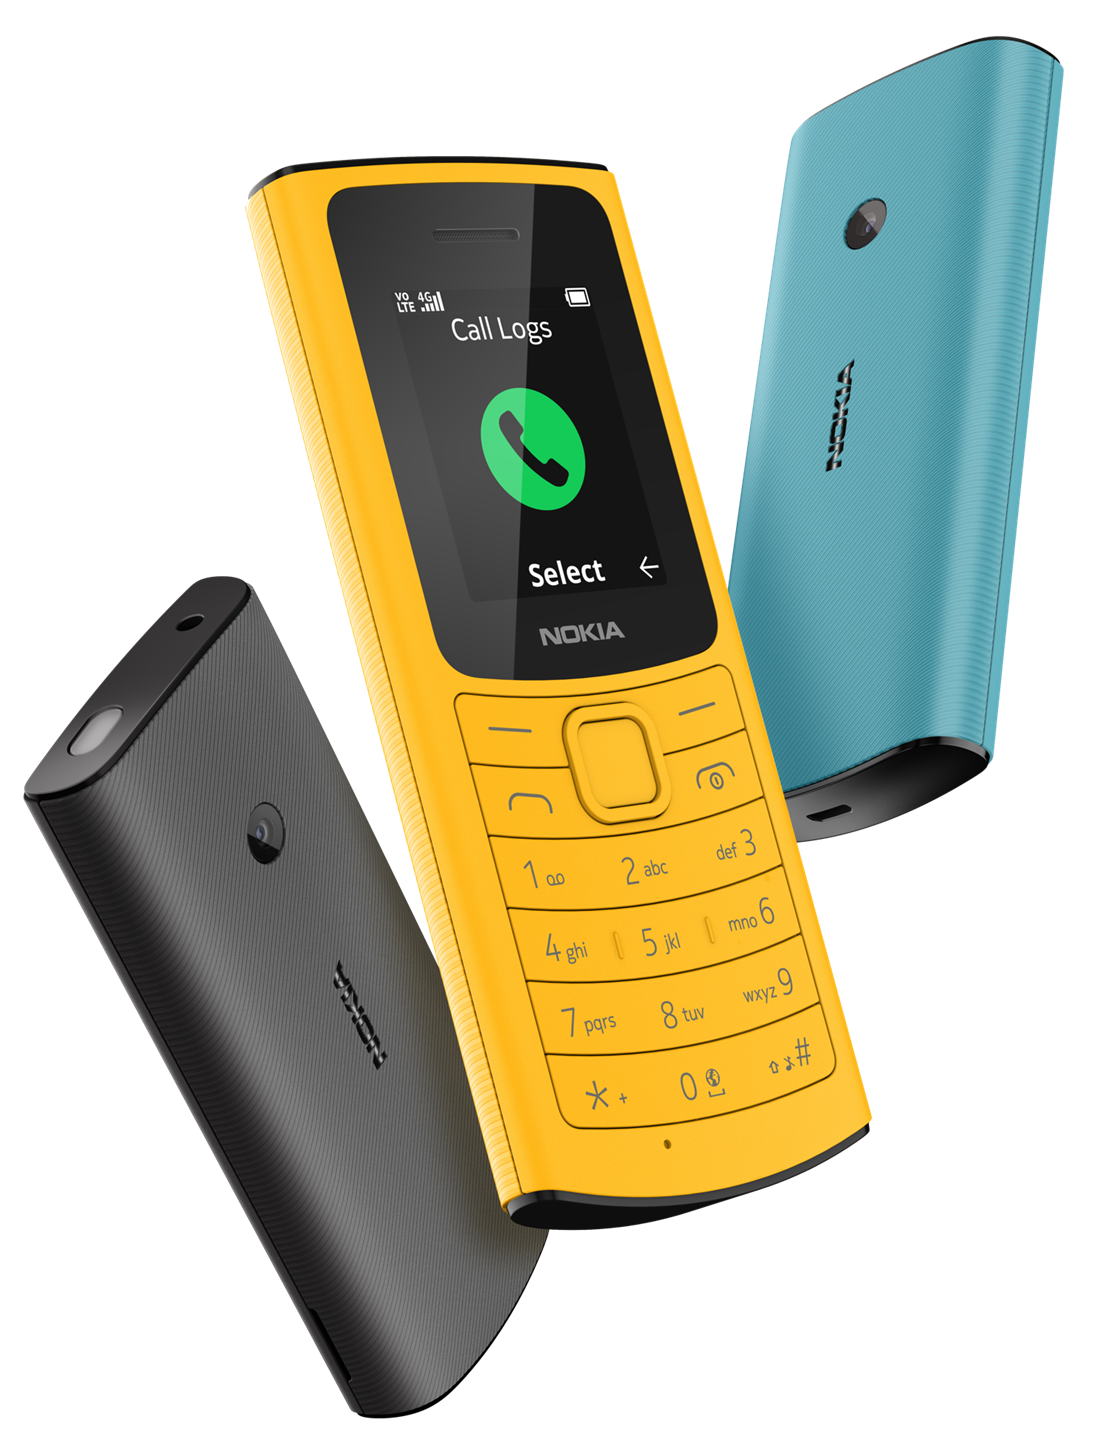 Nokia ra mắt bộ ba dòng điện thoại mới tại Việt Nam, giá chỉ từ 690.000 đồng - Ảnh 3.